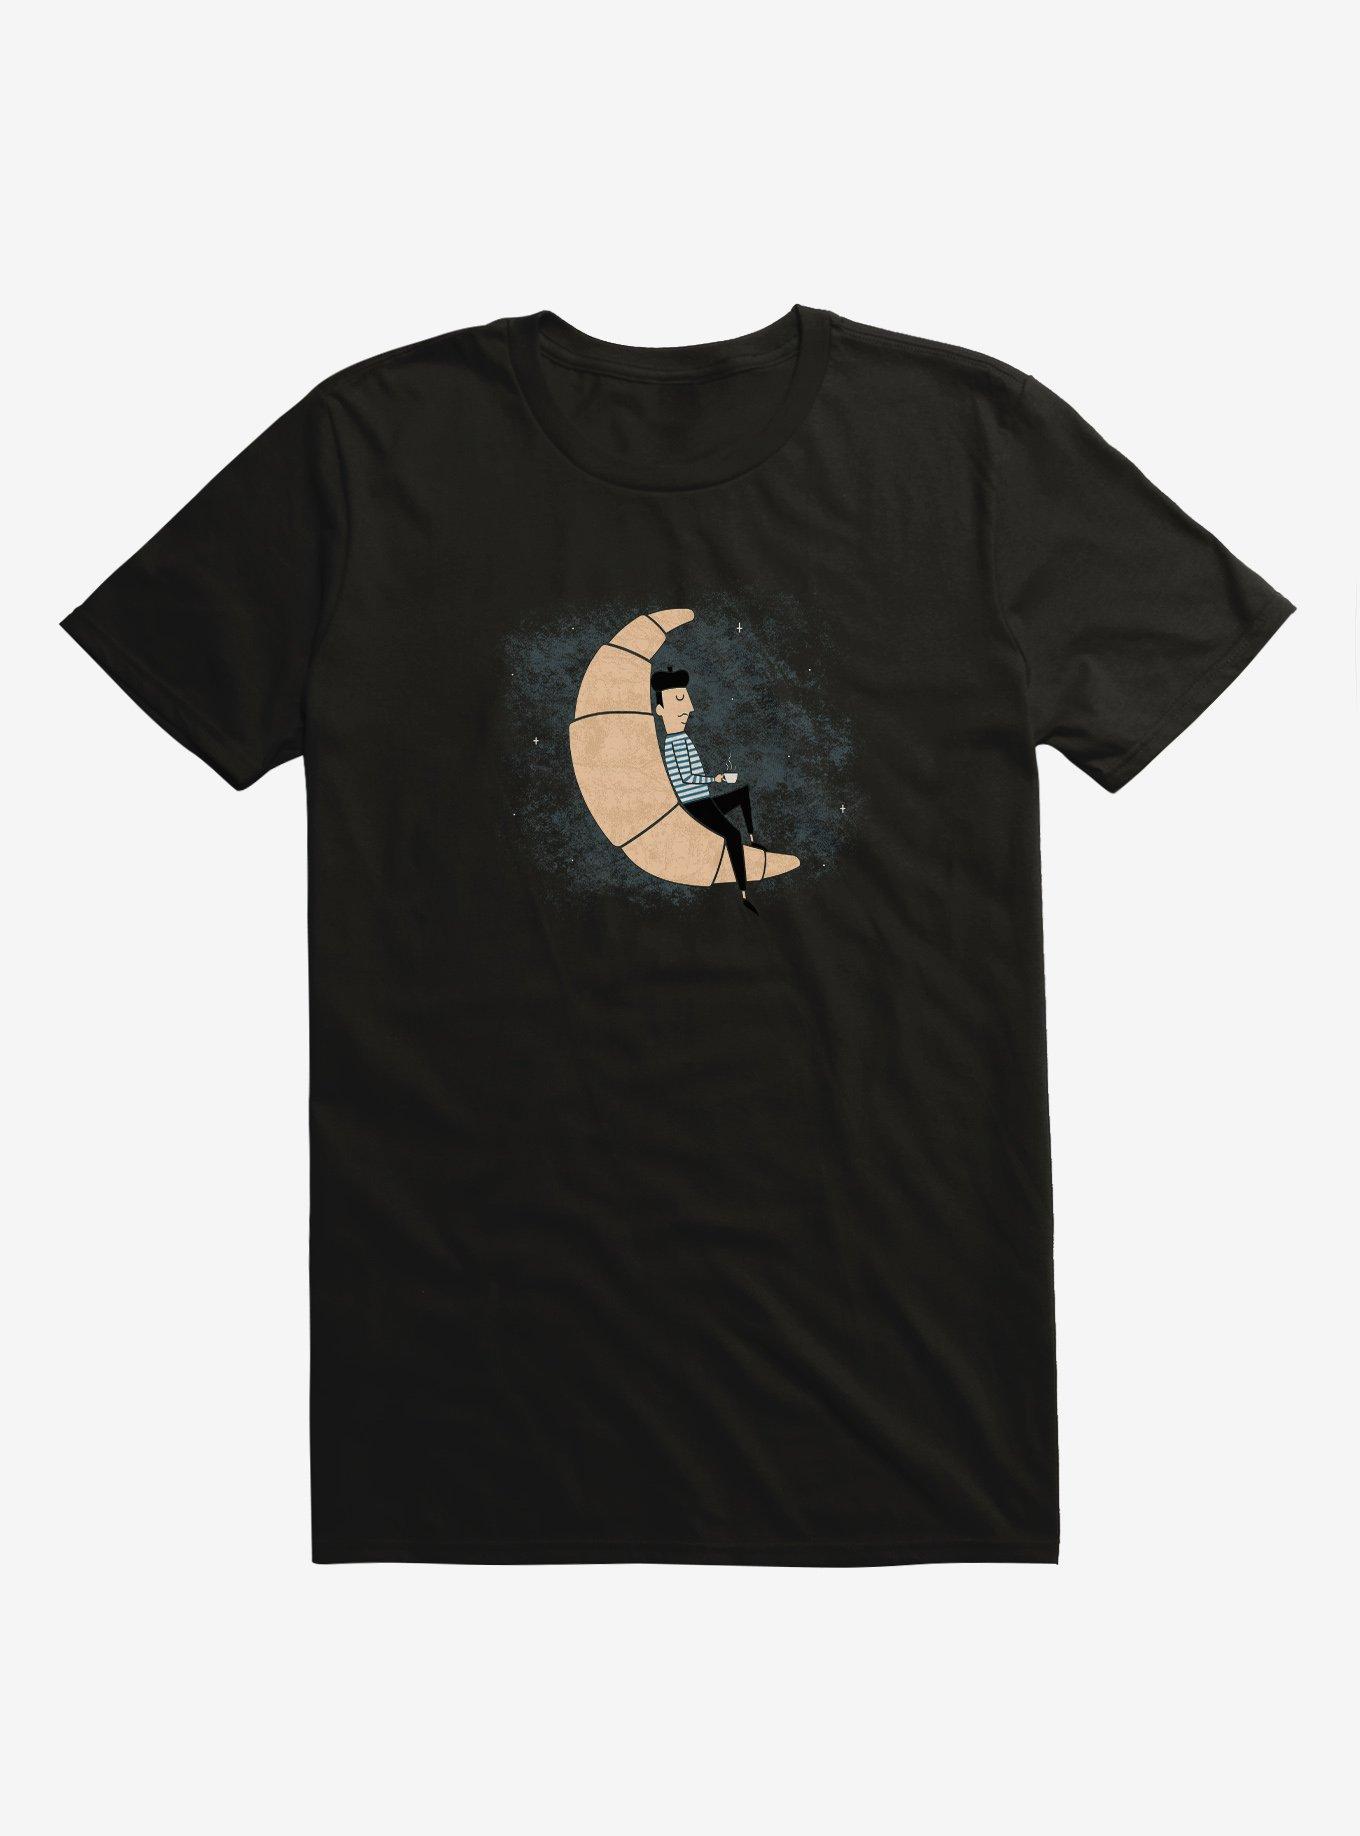 Ze Croissant Moon Black T-Shirt, BLACK, hi-res